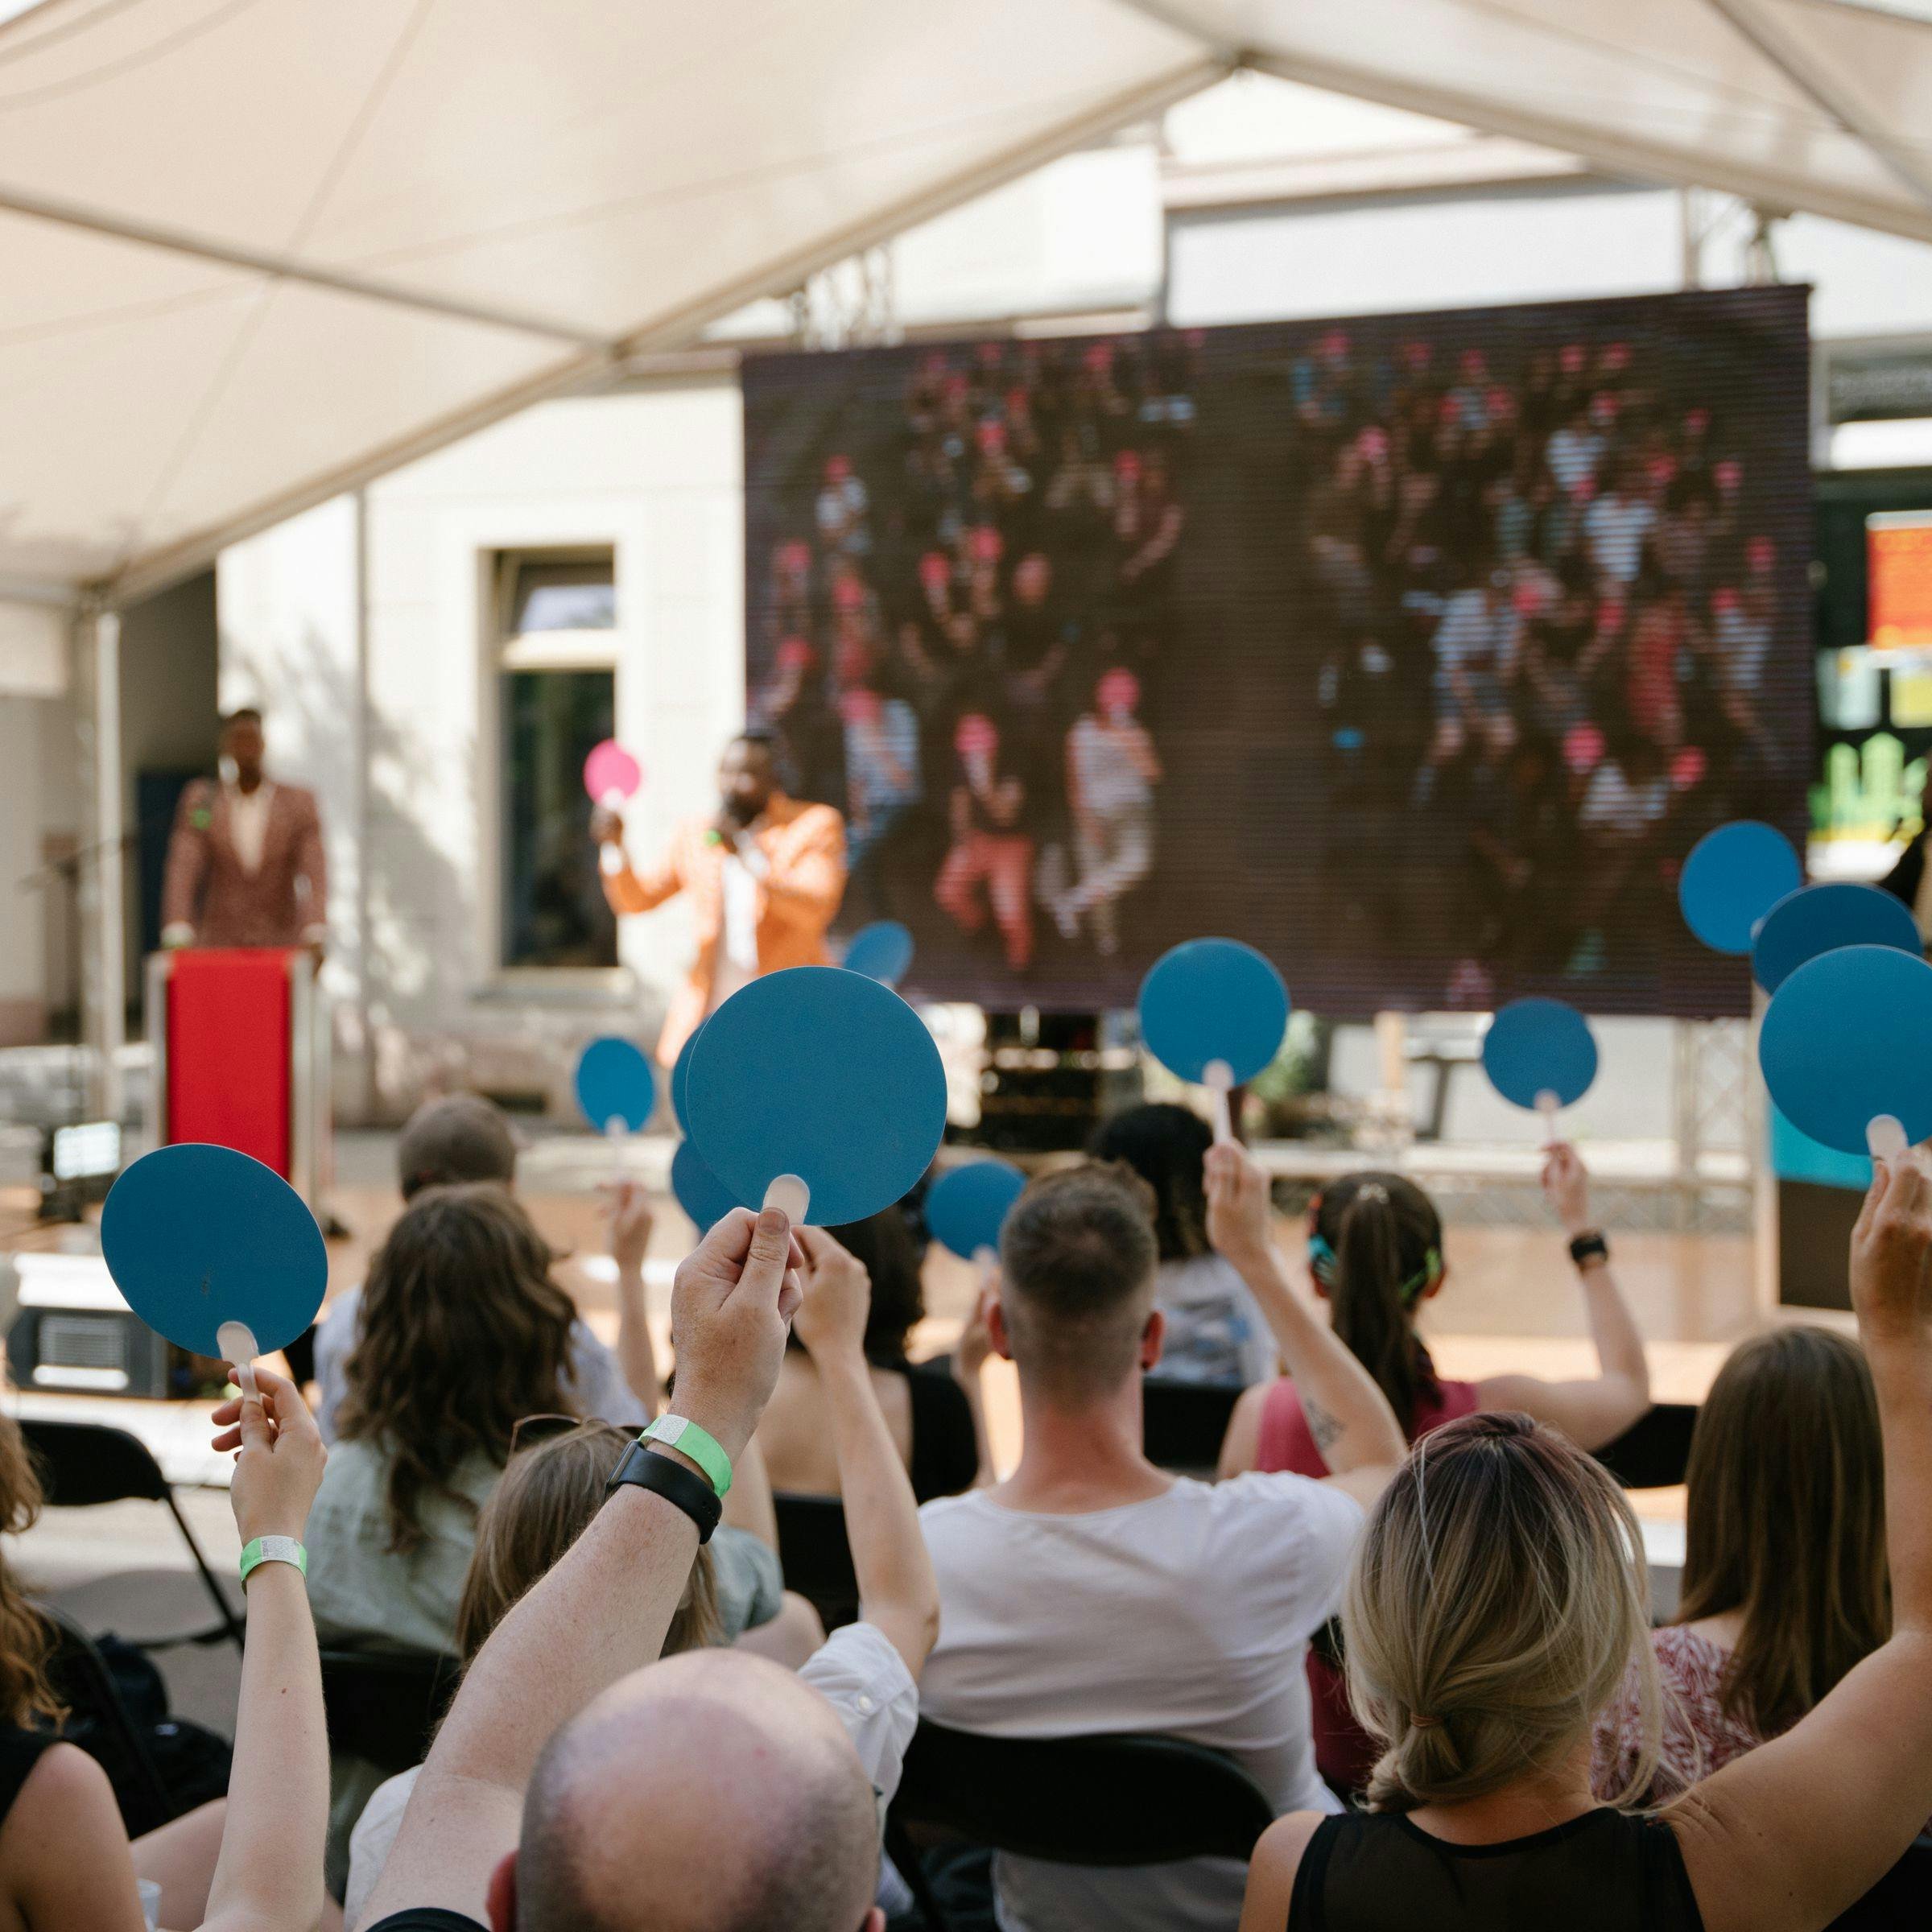 In un formato di discussione all'aperto, il pubblico viene fotografato da dietro mentre alza delle carte blu. Sullo sfondo si può vedere il palco con i moderatori.